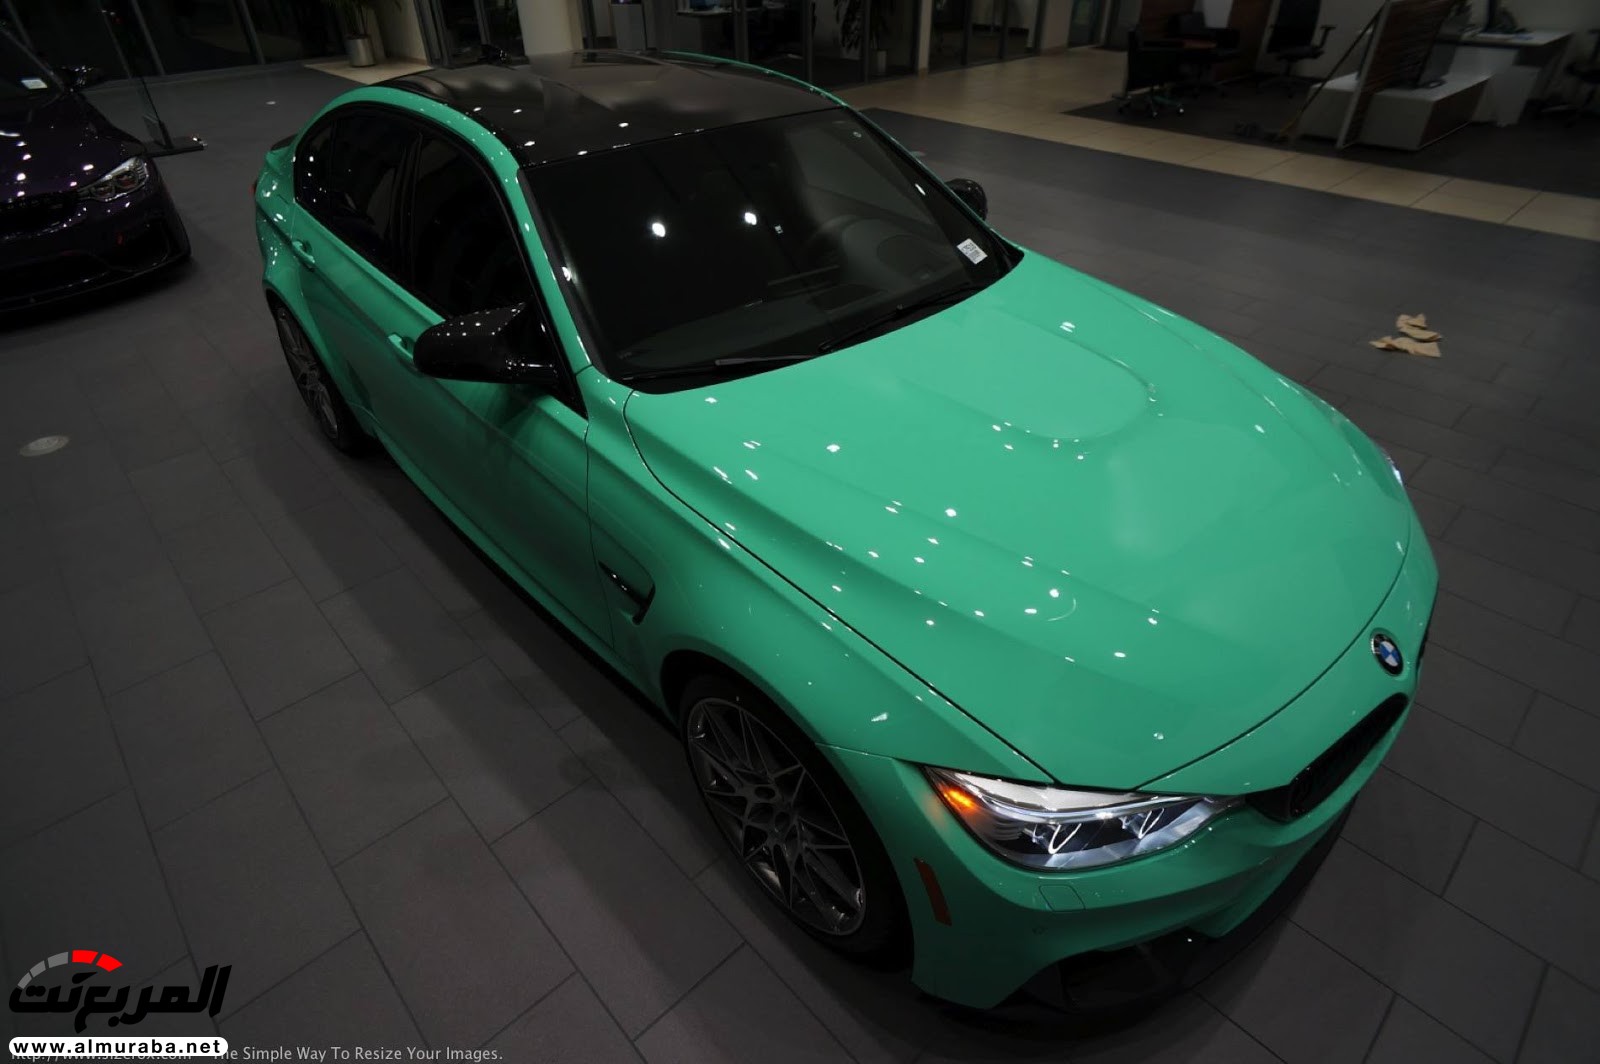 "بالصور" شاهد "بي إم دبليو" F80 M3 الخاصة بطلاء النعناع الأخضر BMW 114